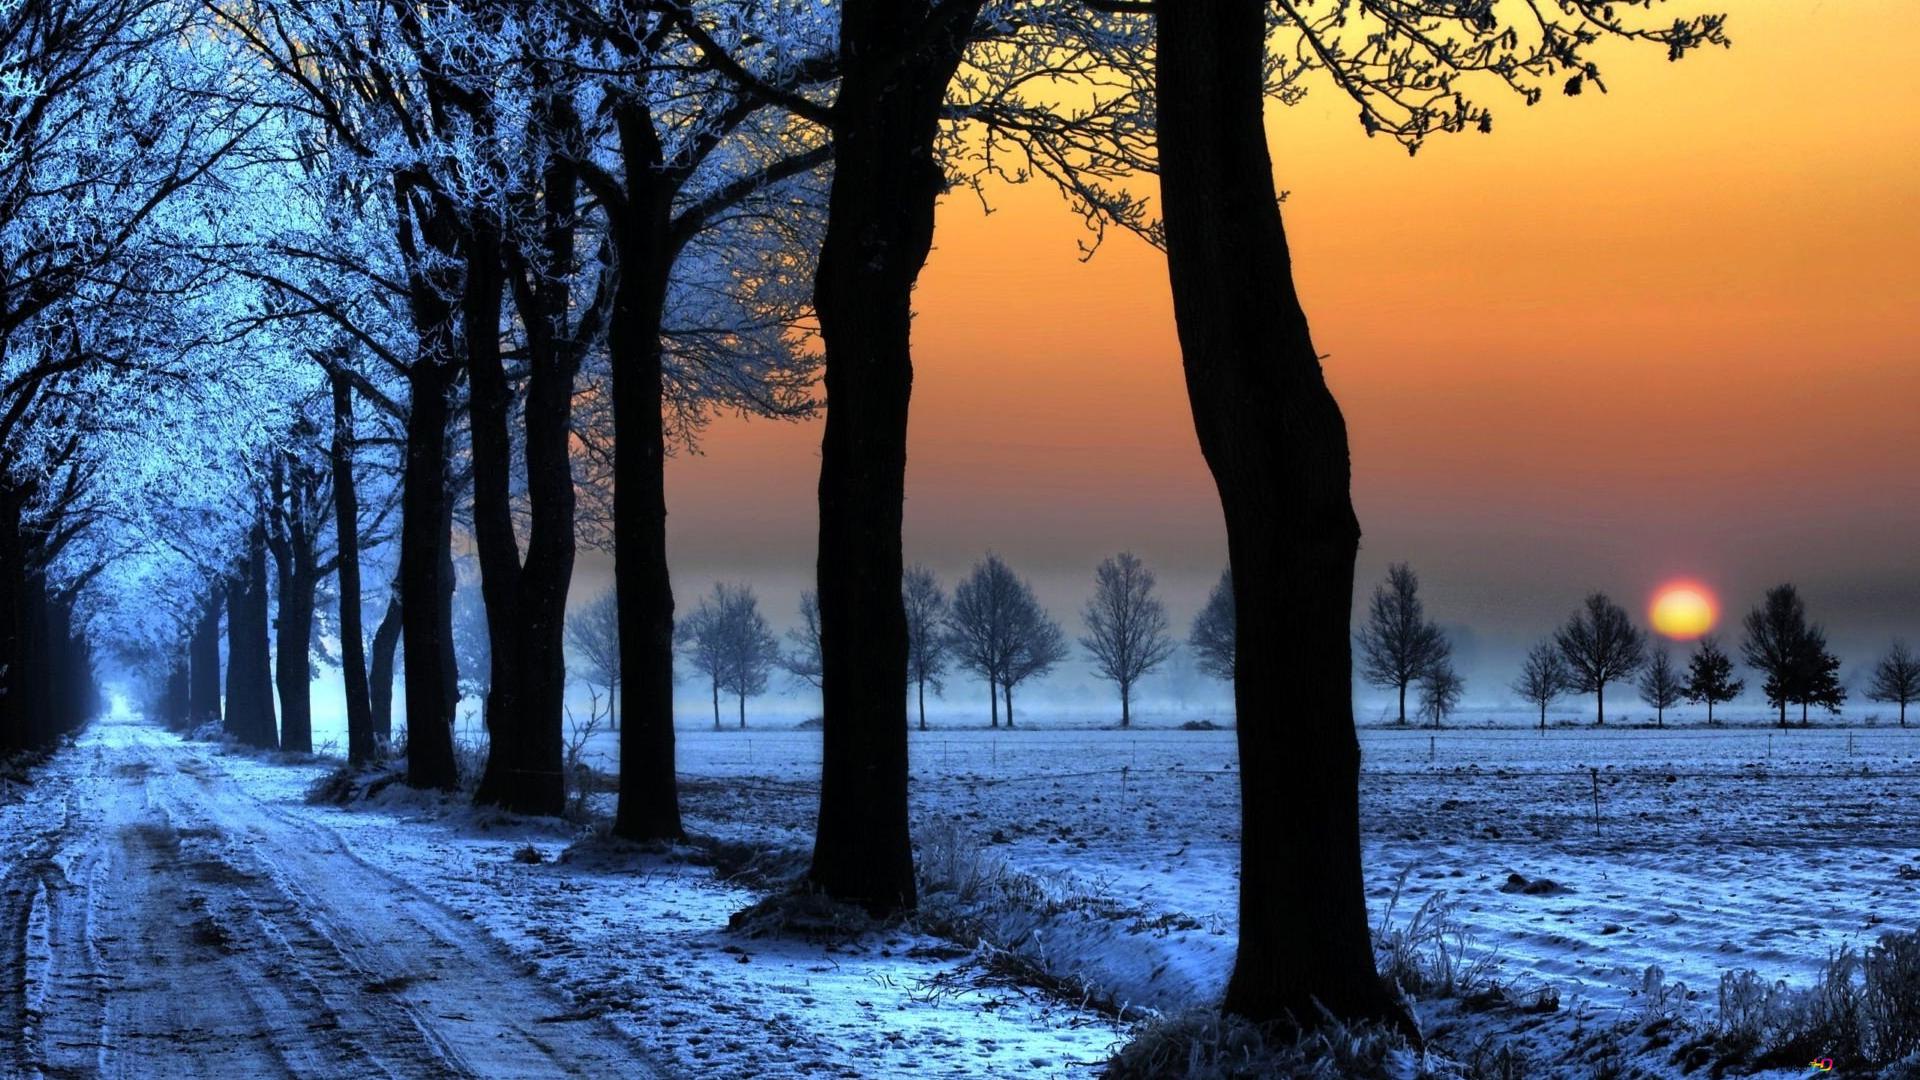 Sunset in winter season HD wallpaper download